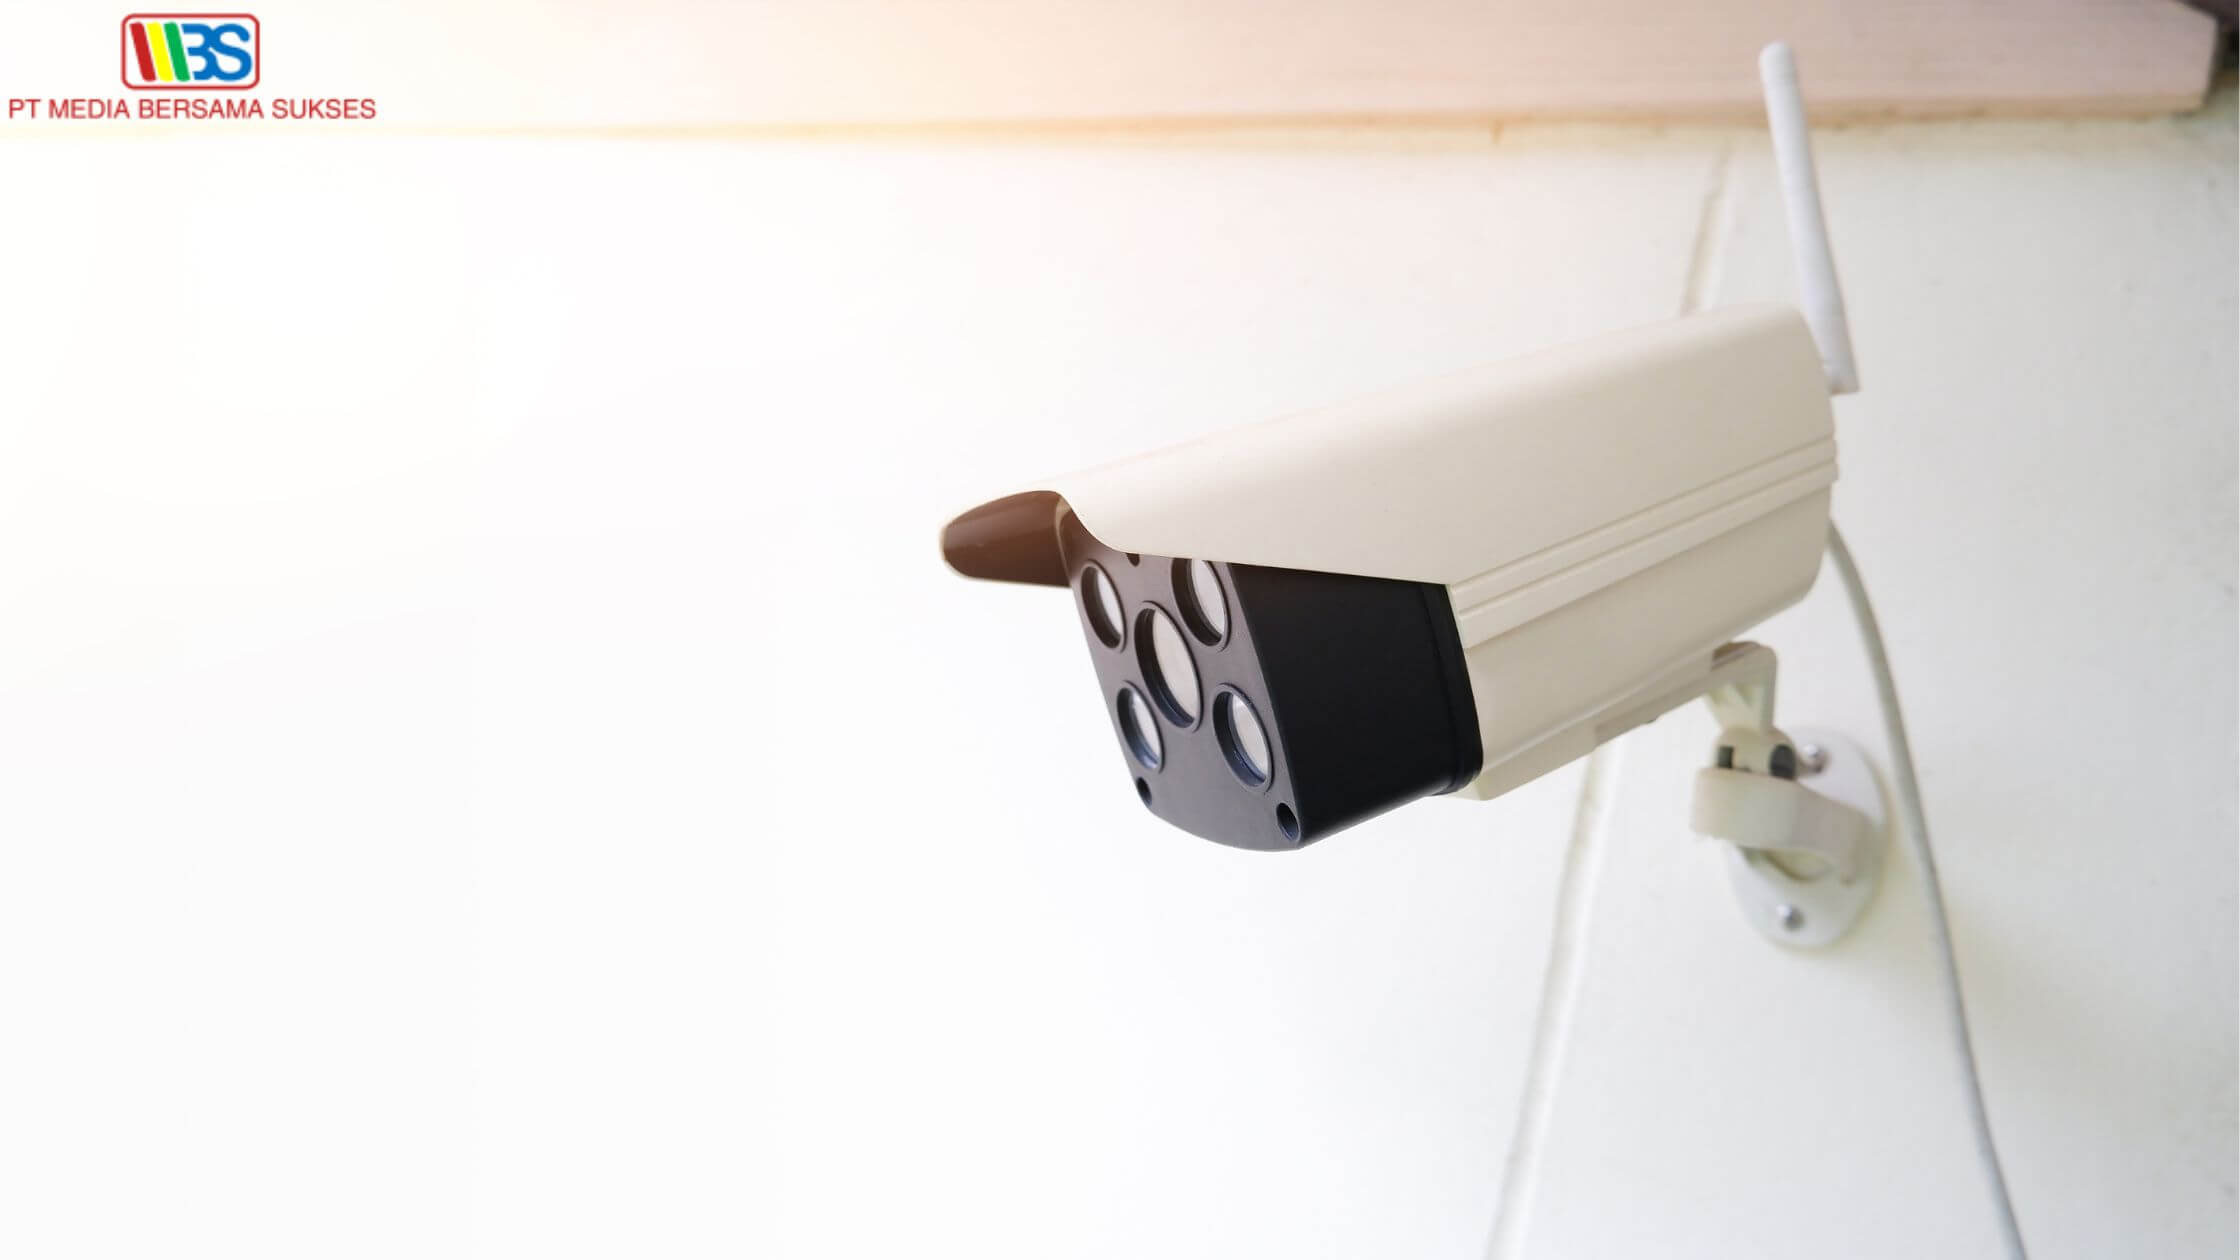 Mengenal CCTV Camera Wireless, Kelebihan dan Kekurangannya